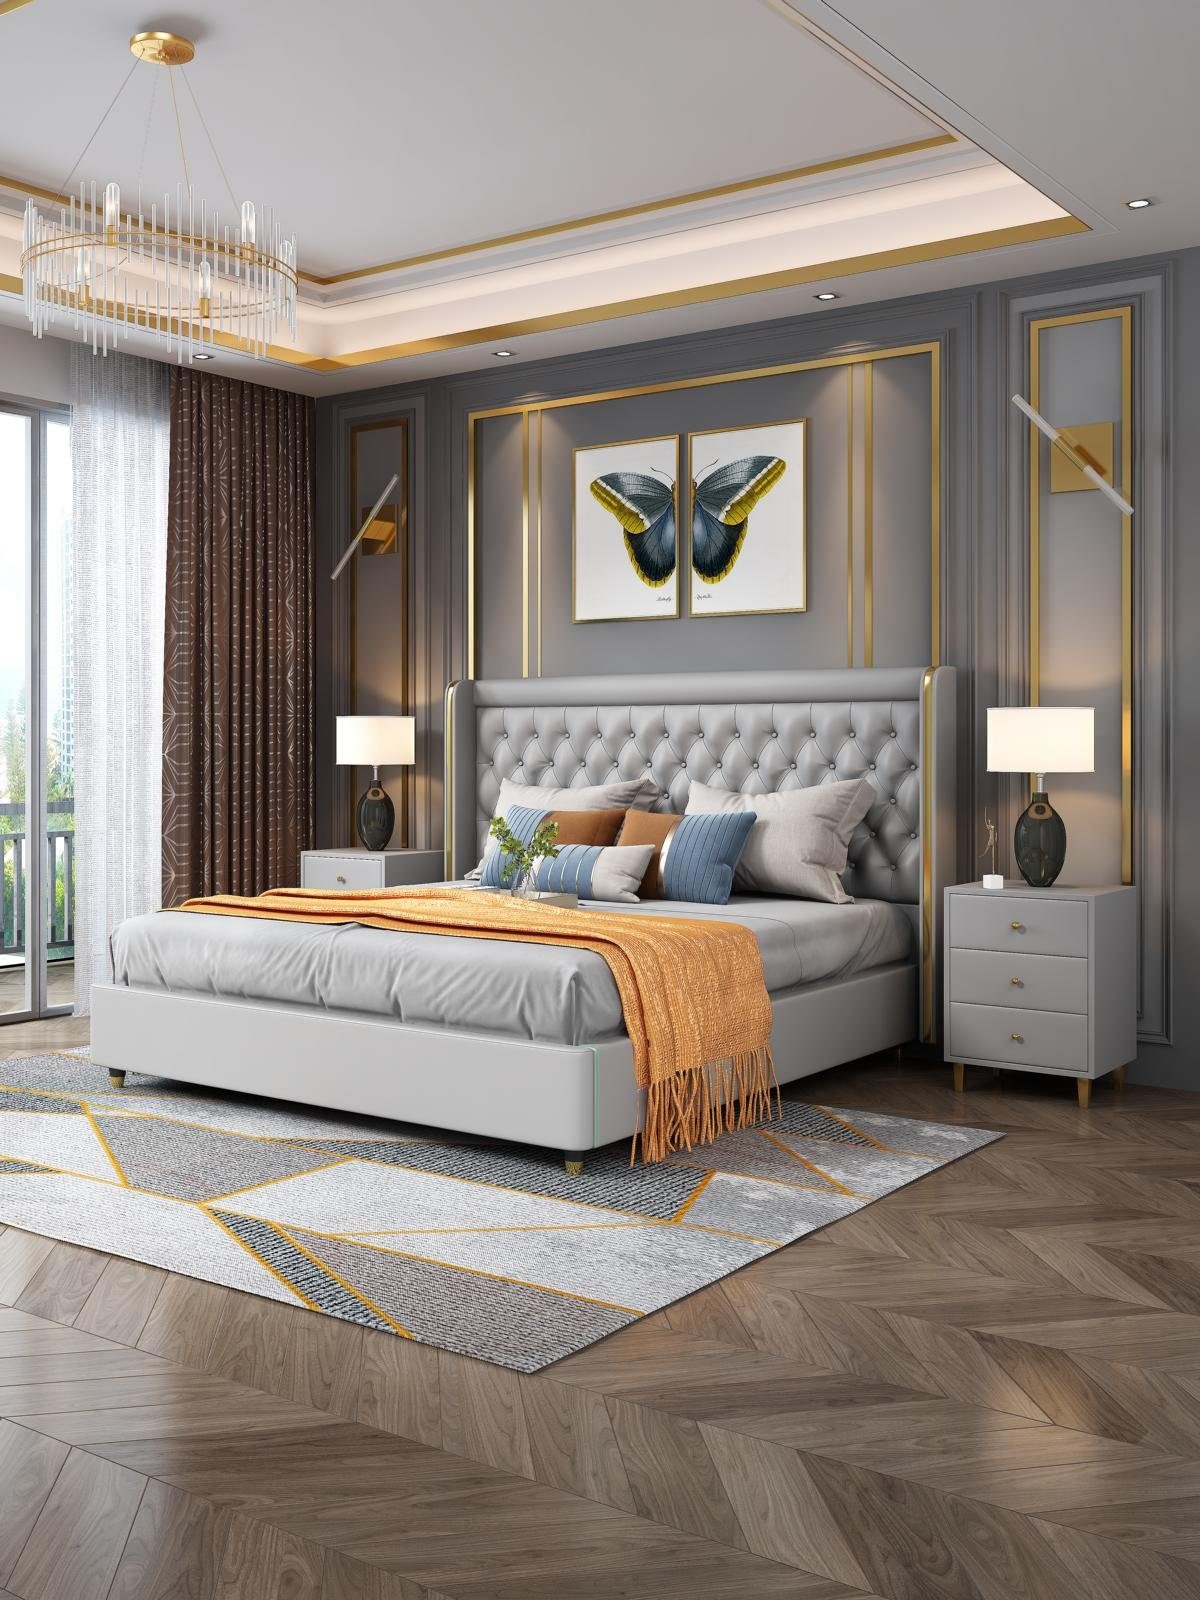 JVmoebel Bett, Klassisches Bett Doppelbett Betten Holz Landhaus Stil Echtes Grau